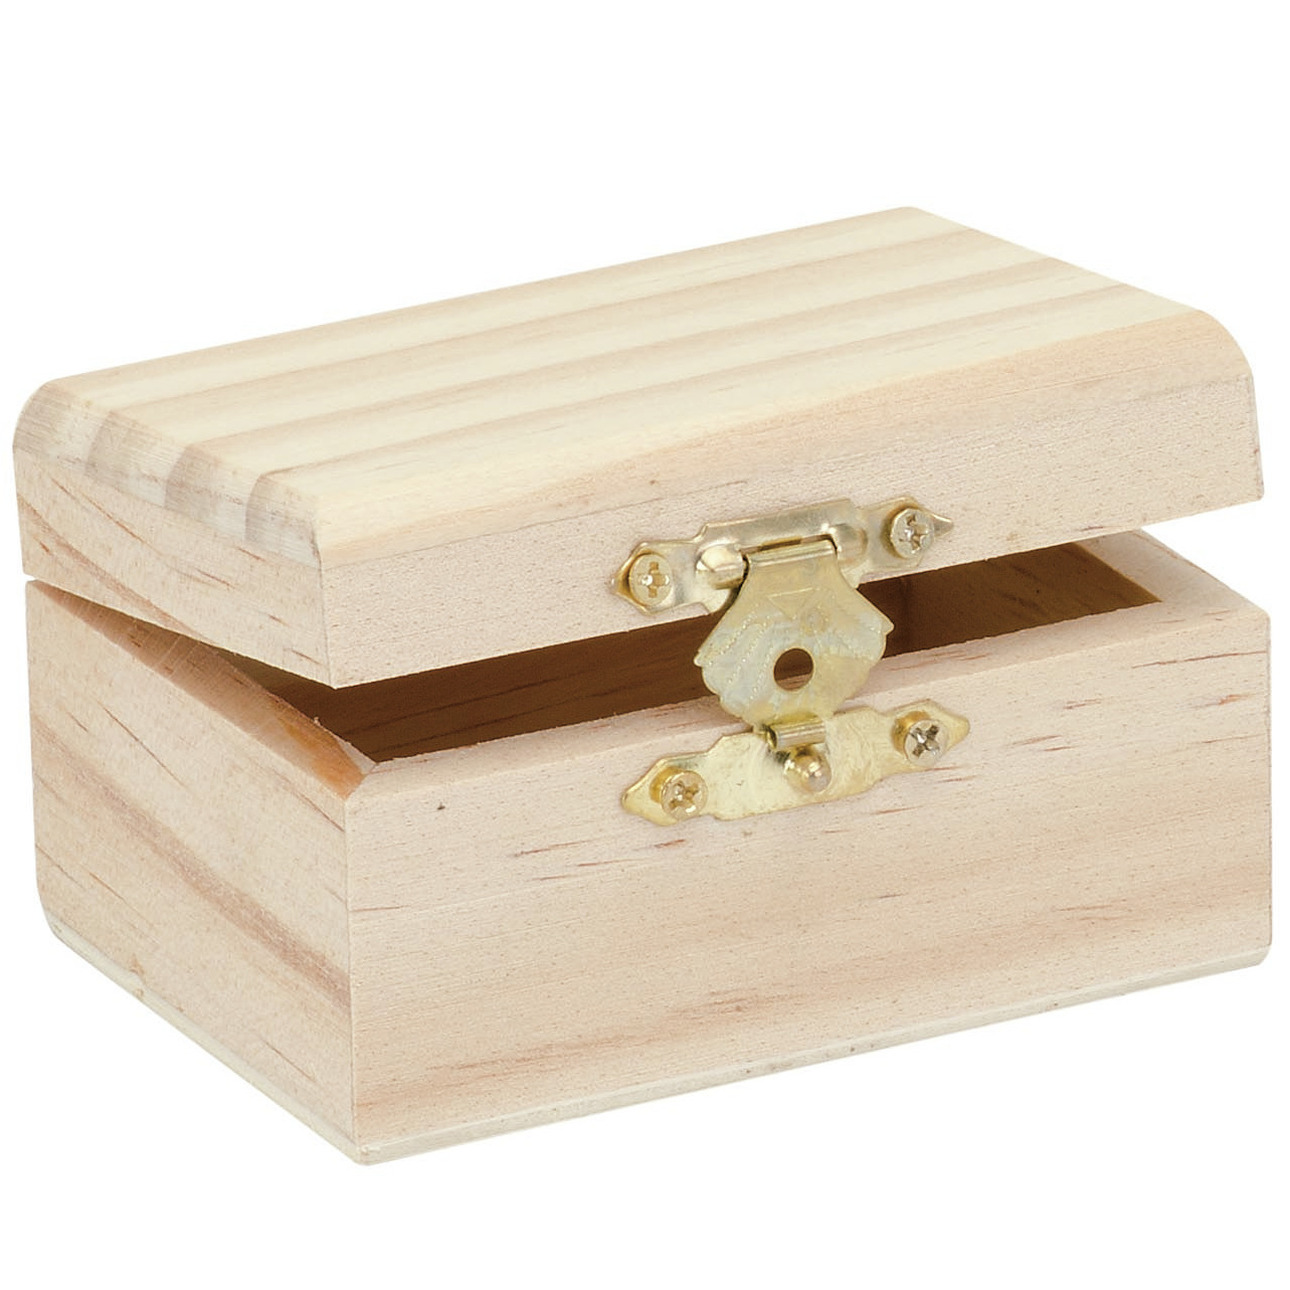 Klein houten kistje rechthoek 8 x 5.5 x 4.5 cm